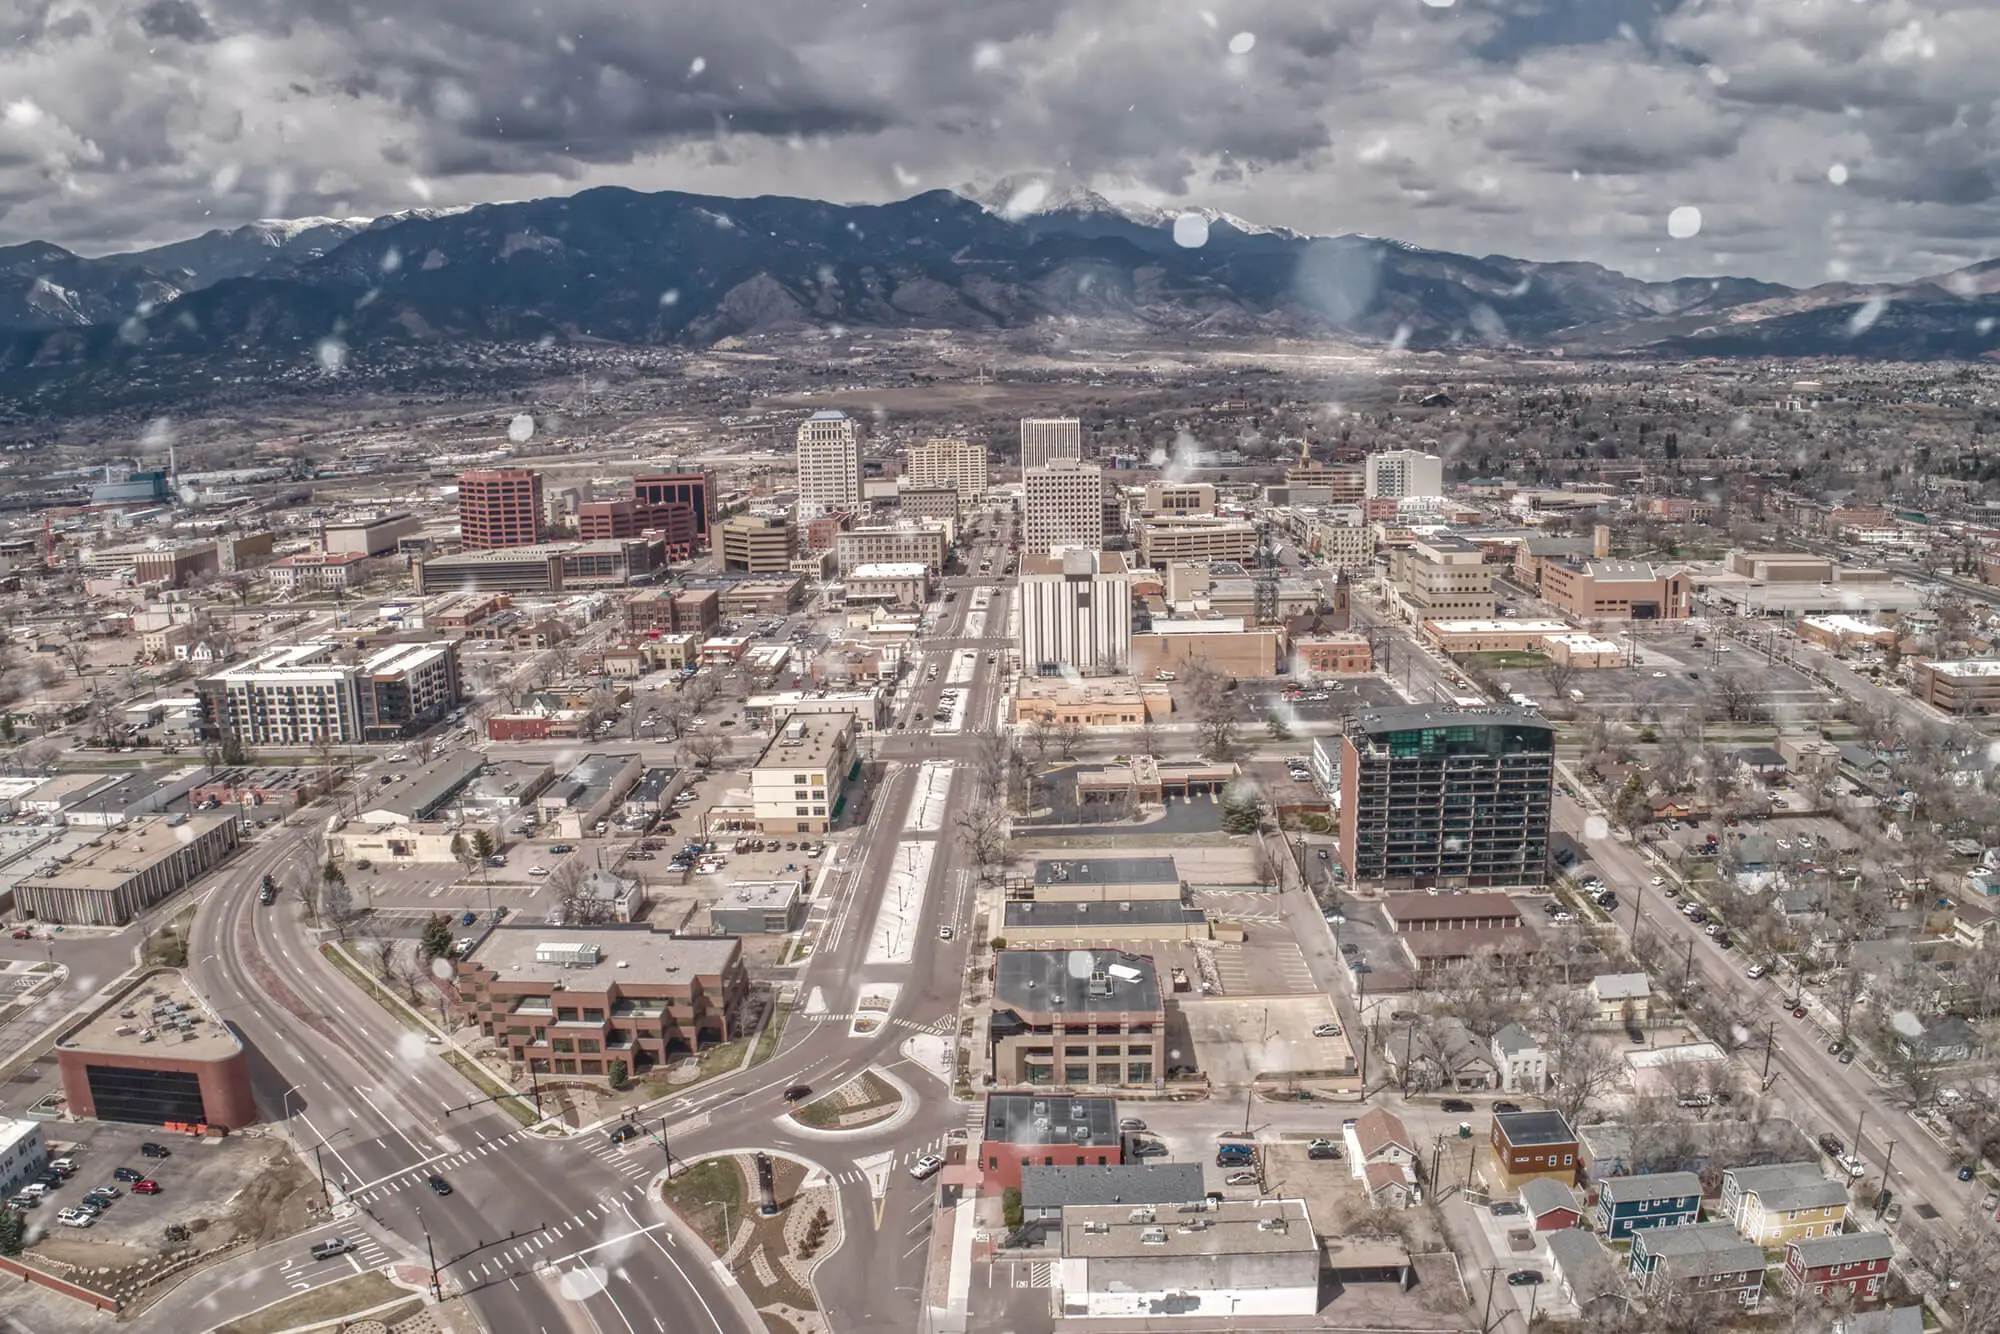 Picture of Colorado Springs, Colorado. Rubicon Snow removal covers Colorado Springs.